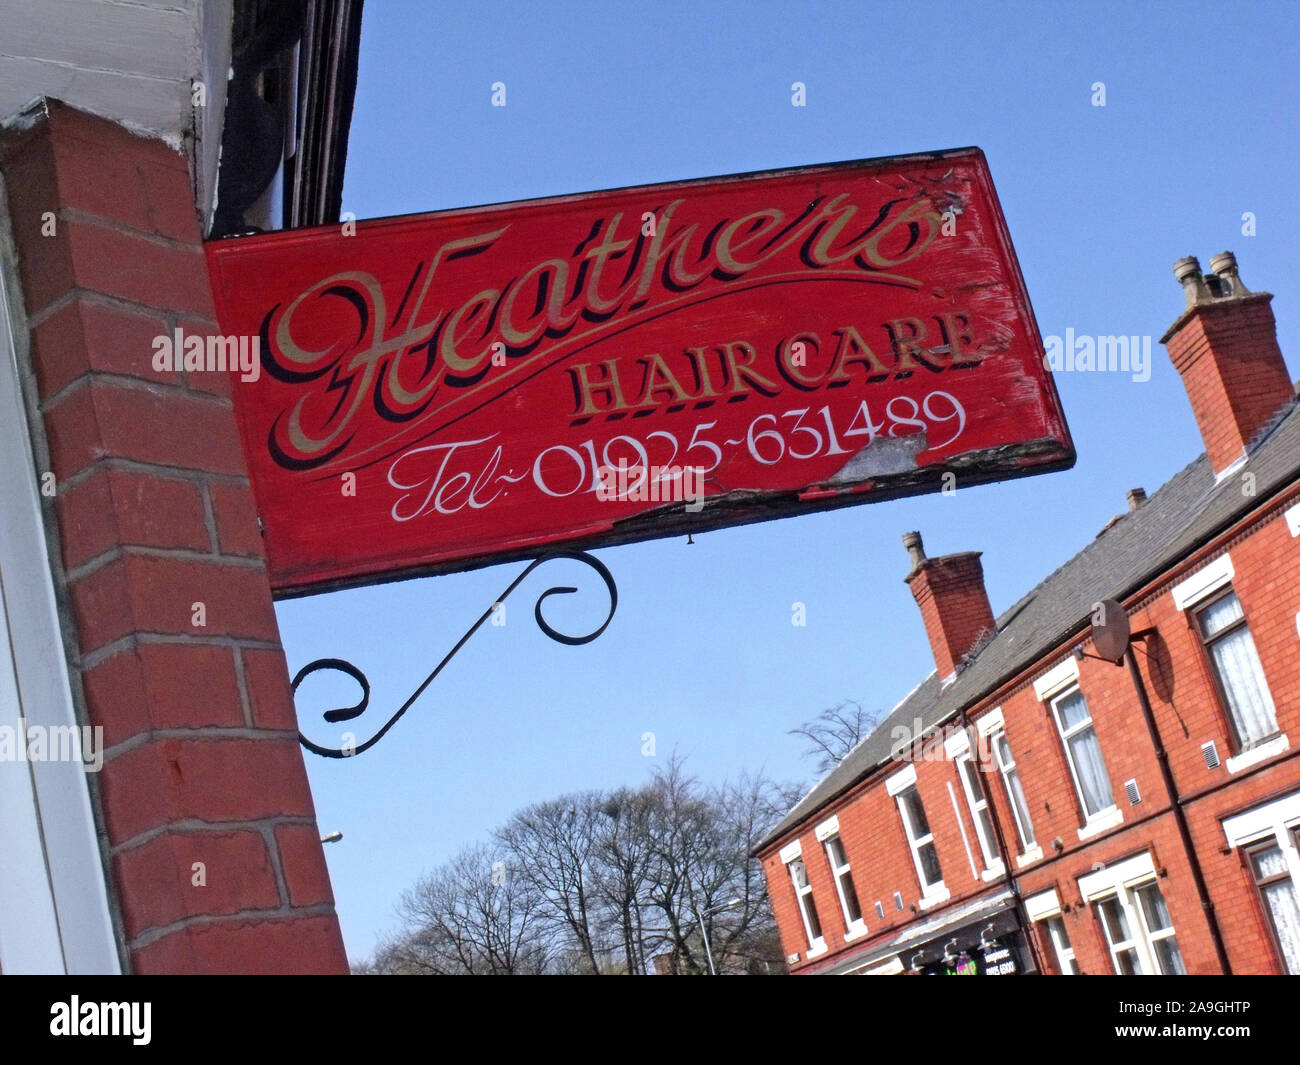 Eriche Cura dei capelli -, 01925-631489 Latchford village, capelli da Heather, 3 Thelwall Lane, Warrington, Cheshire, Inghilterra, WA4 1LJ Foto Stock